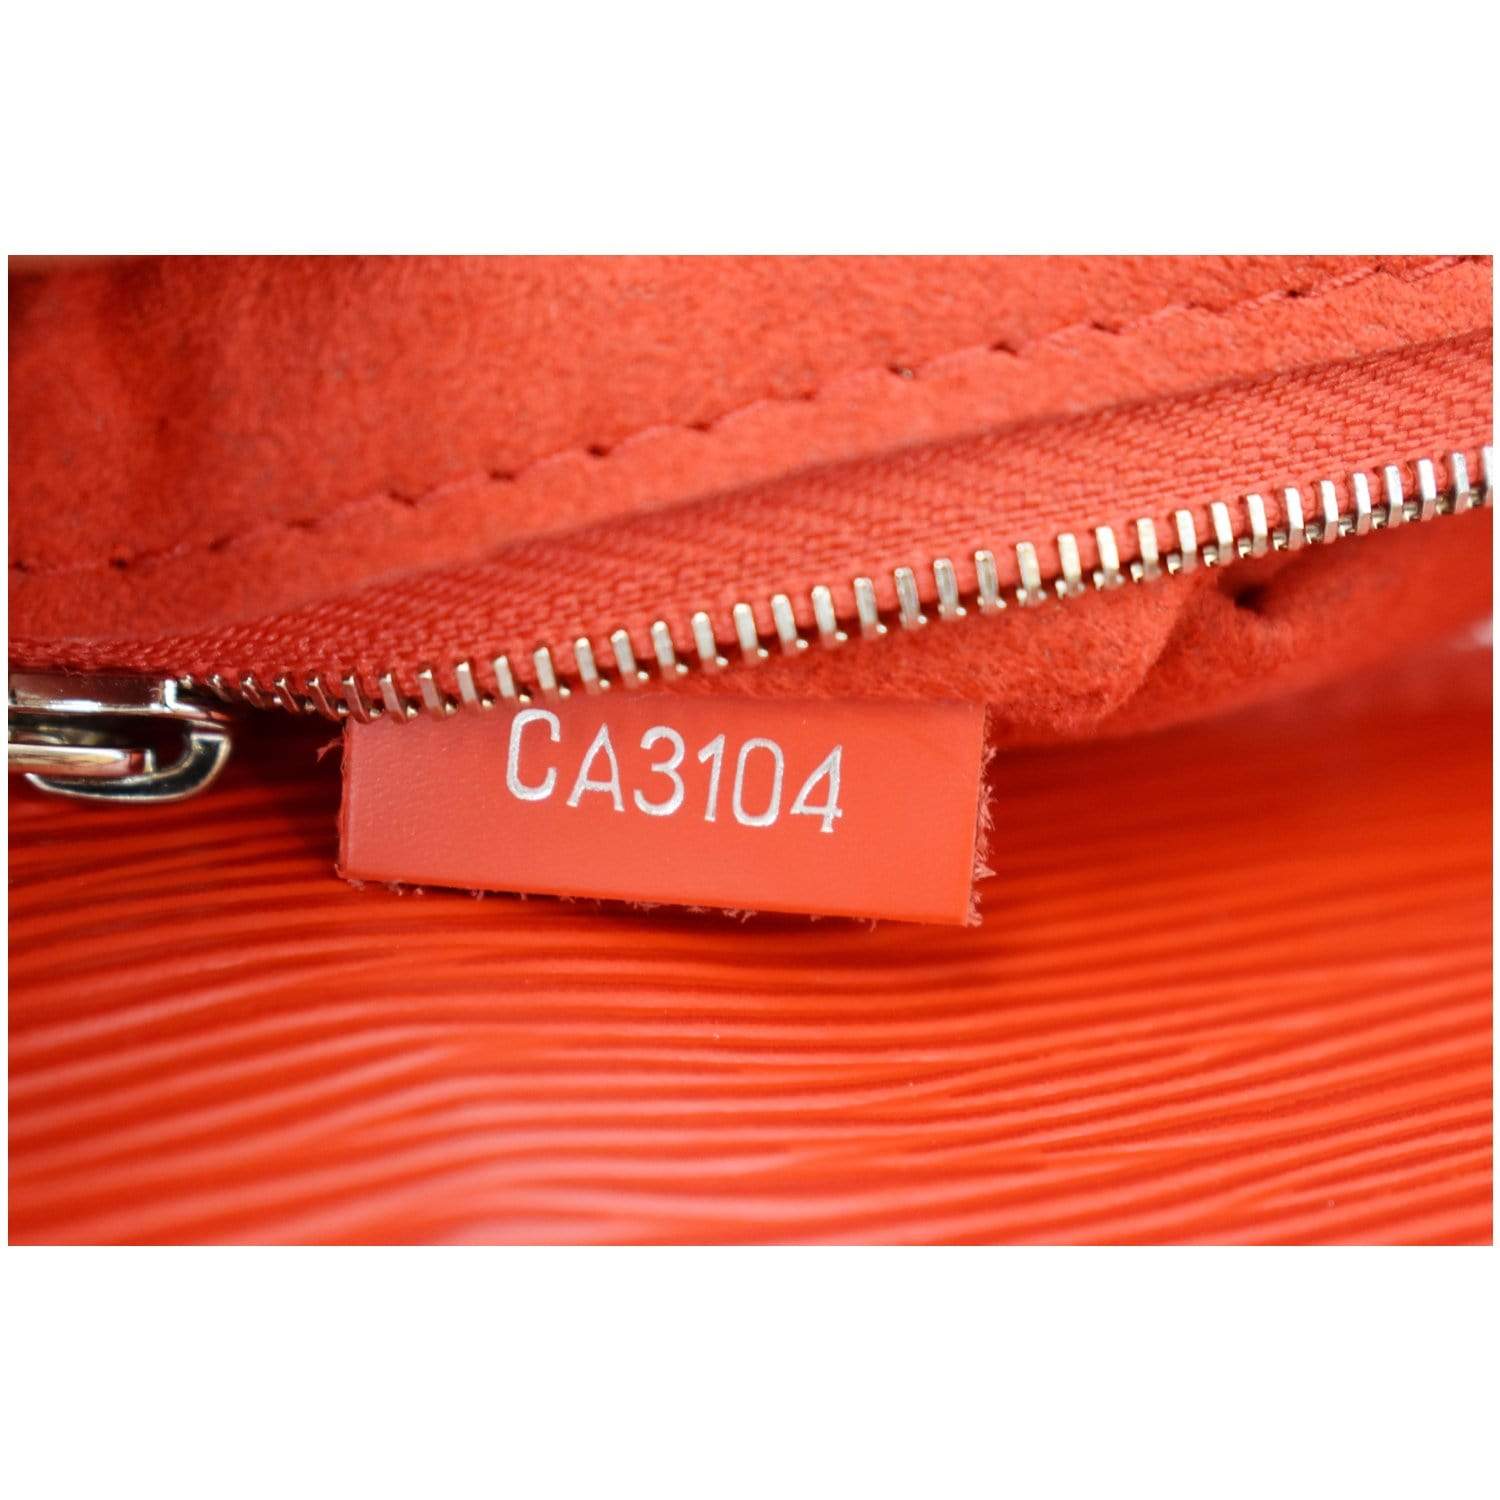 Louis Vuitton Indigo EPI Leather Marly mm Bag